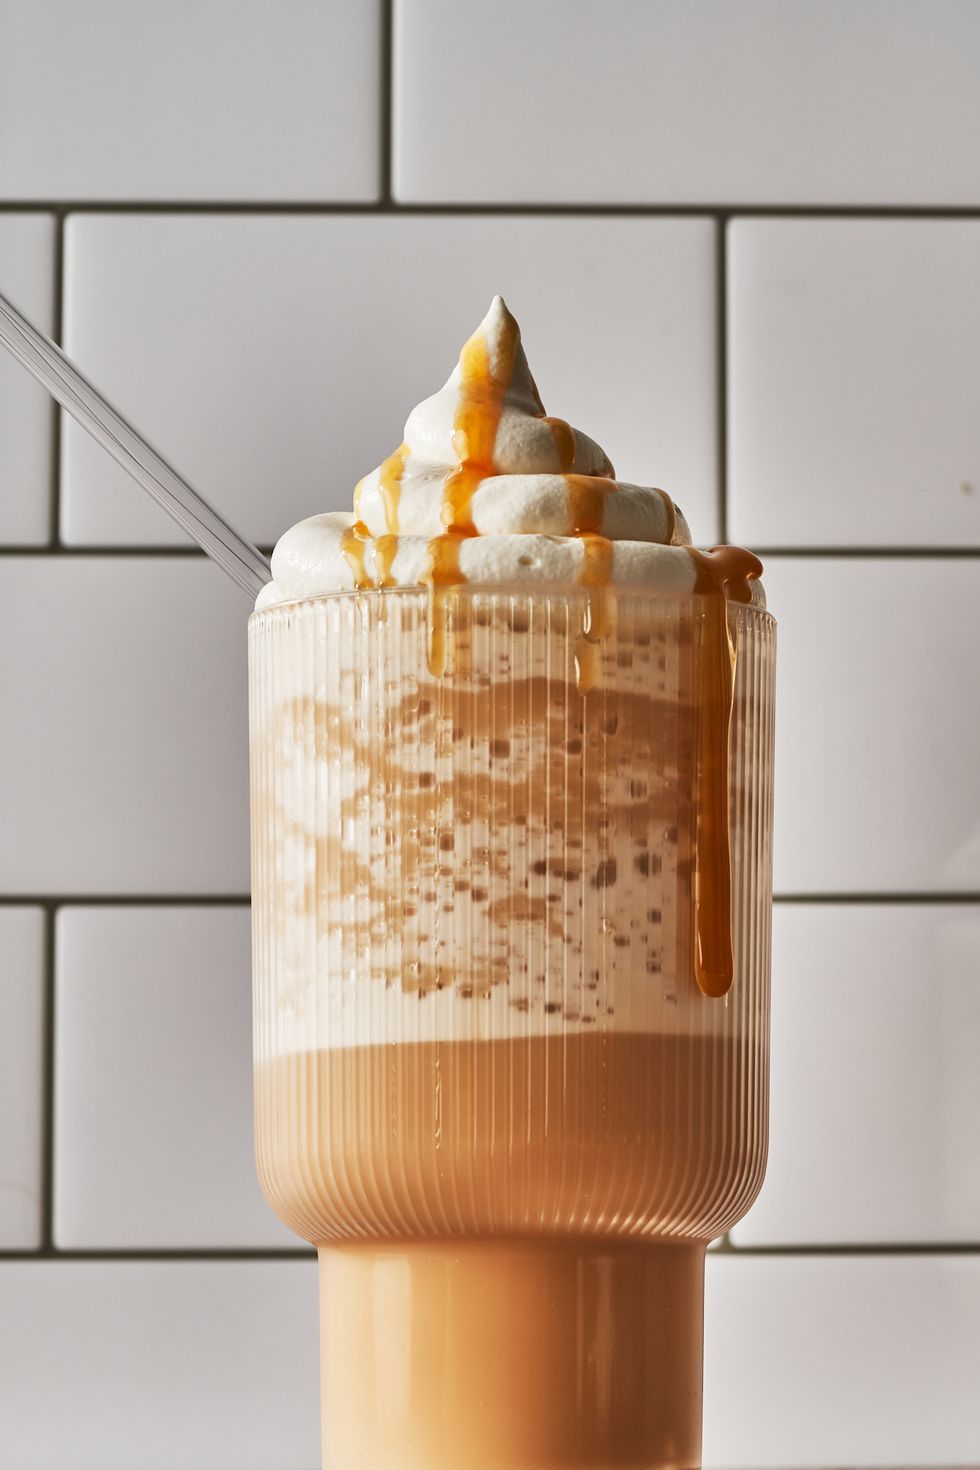 Creamy Margarita Milkshake - Saving Room for Dessert